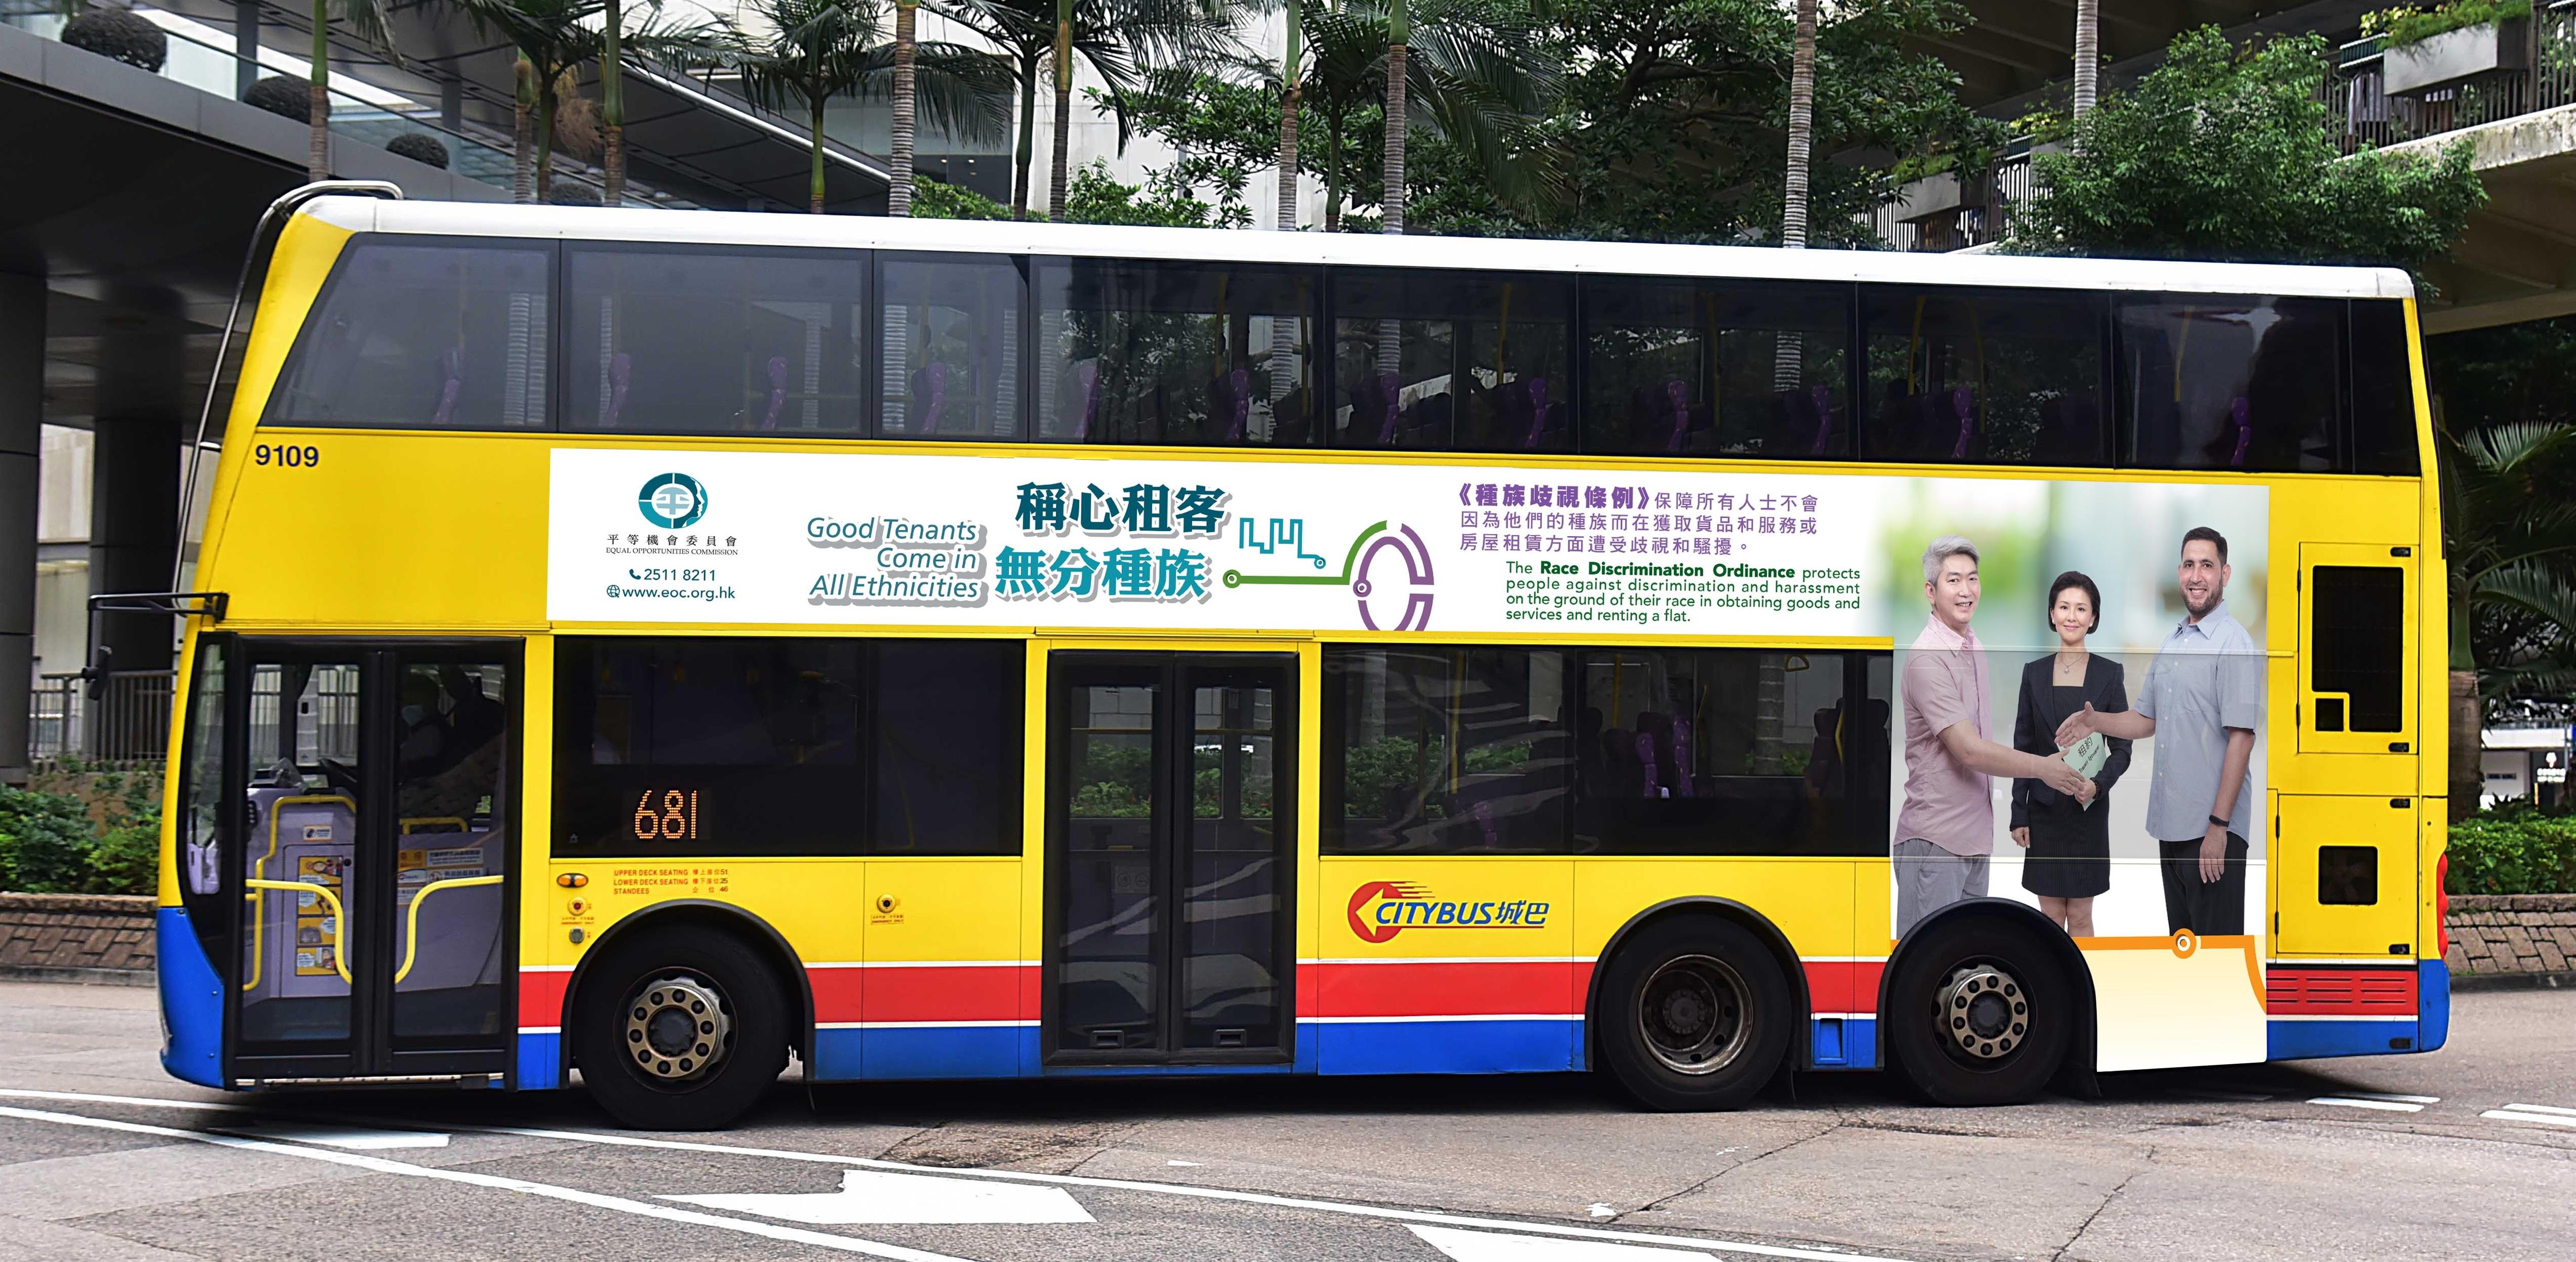 平机会推出以「称心租客　无分种族」为题的巴士车身宣传广告，以推广种族平等的物业租赁。